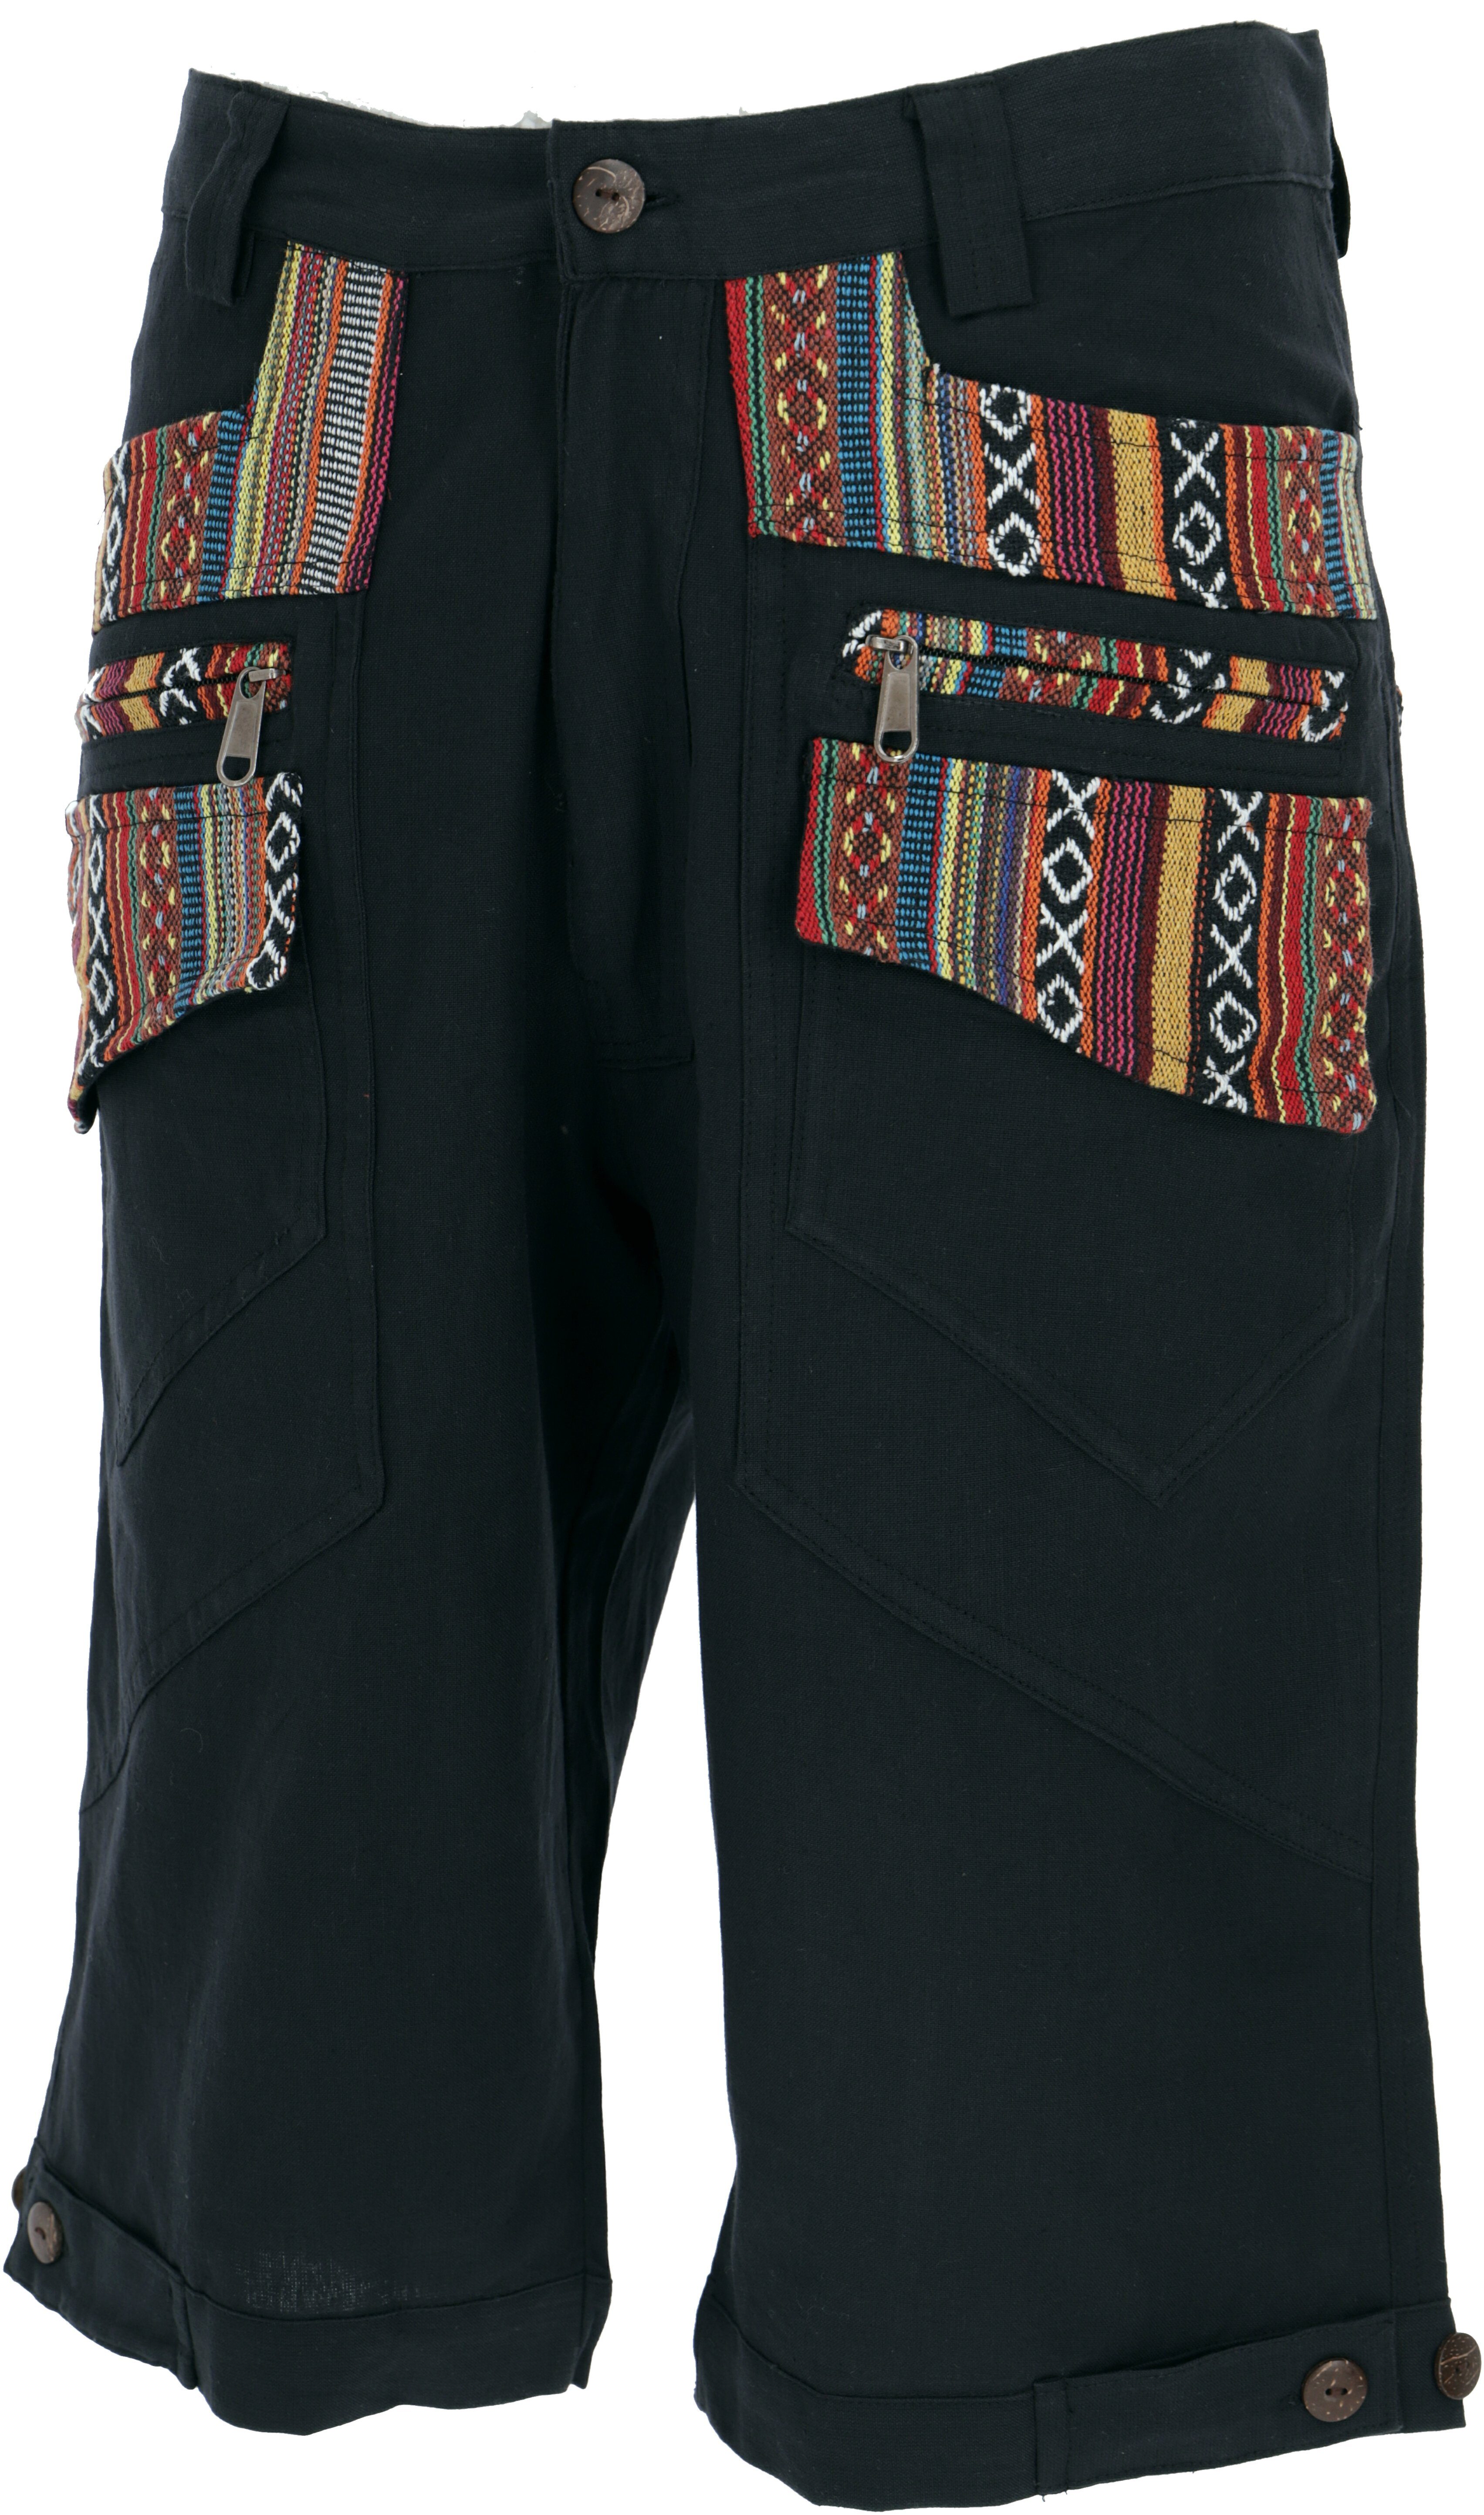 - Kurze Style, Goa Goa Ethno Shorts Bekleidung Guru-Shop Hose, alternative schwarz Relaxhose Yogahose,